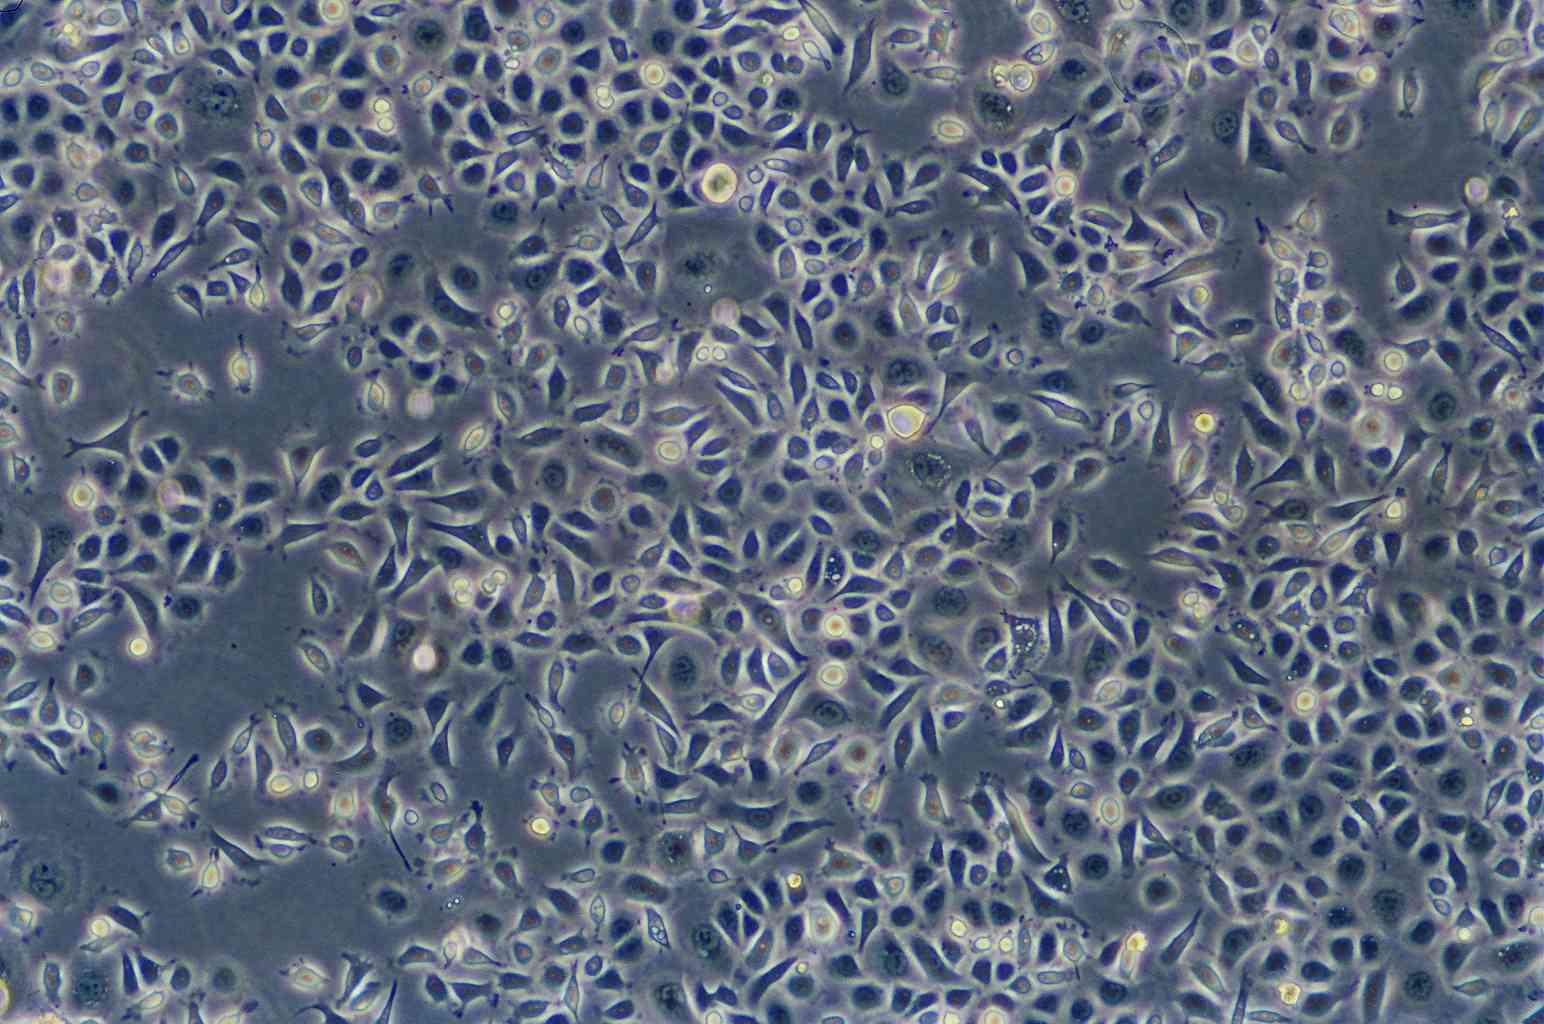 TE-15 Cells(赠送Str鉴定报告)|人食管癌细胞